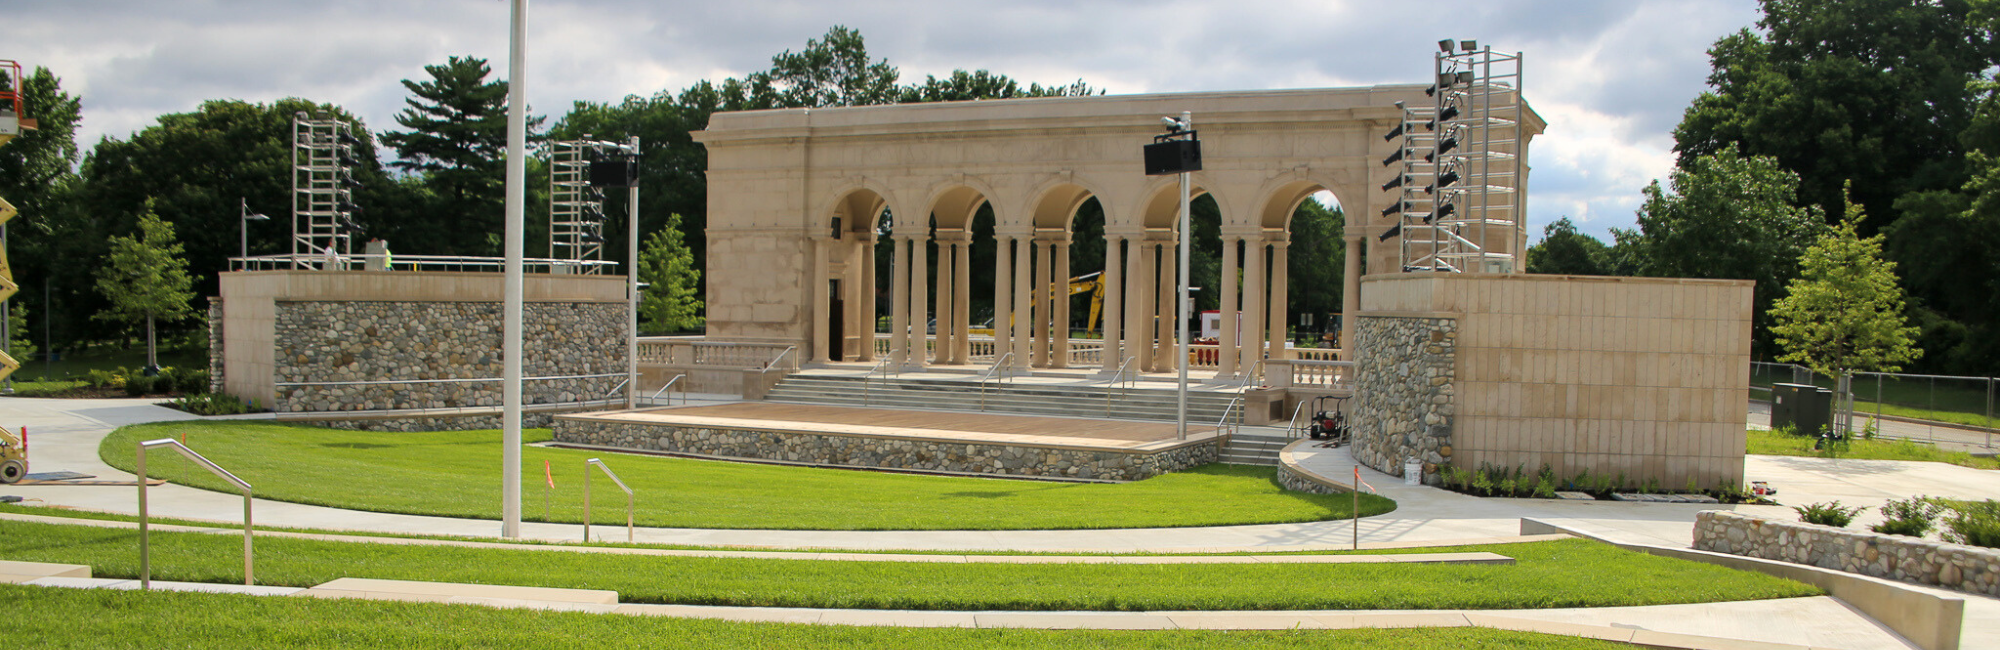 Taggert Memorial Amphitheater